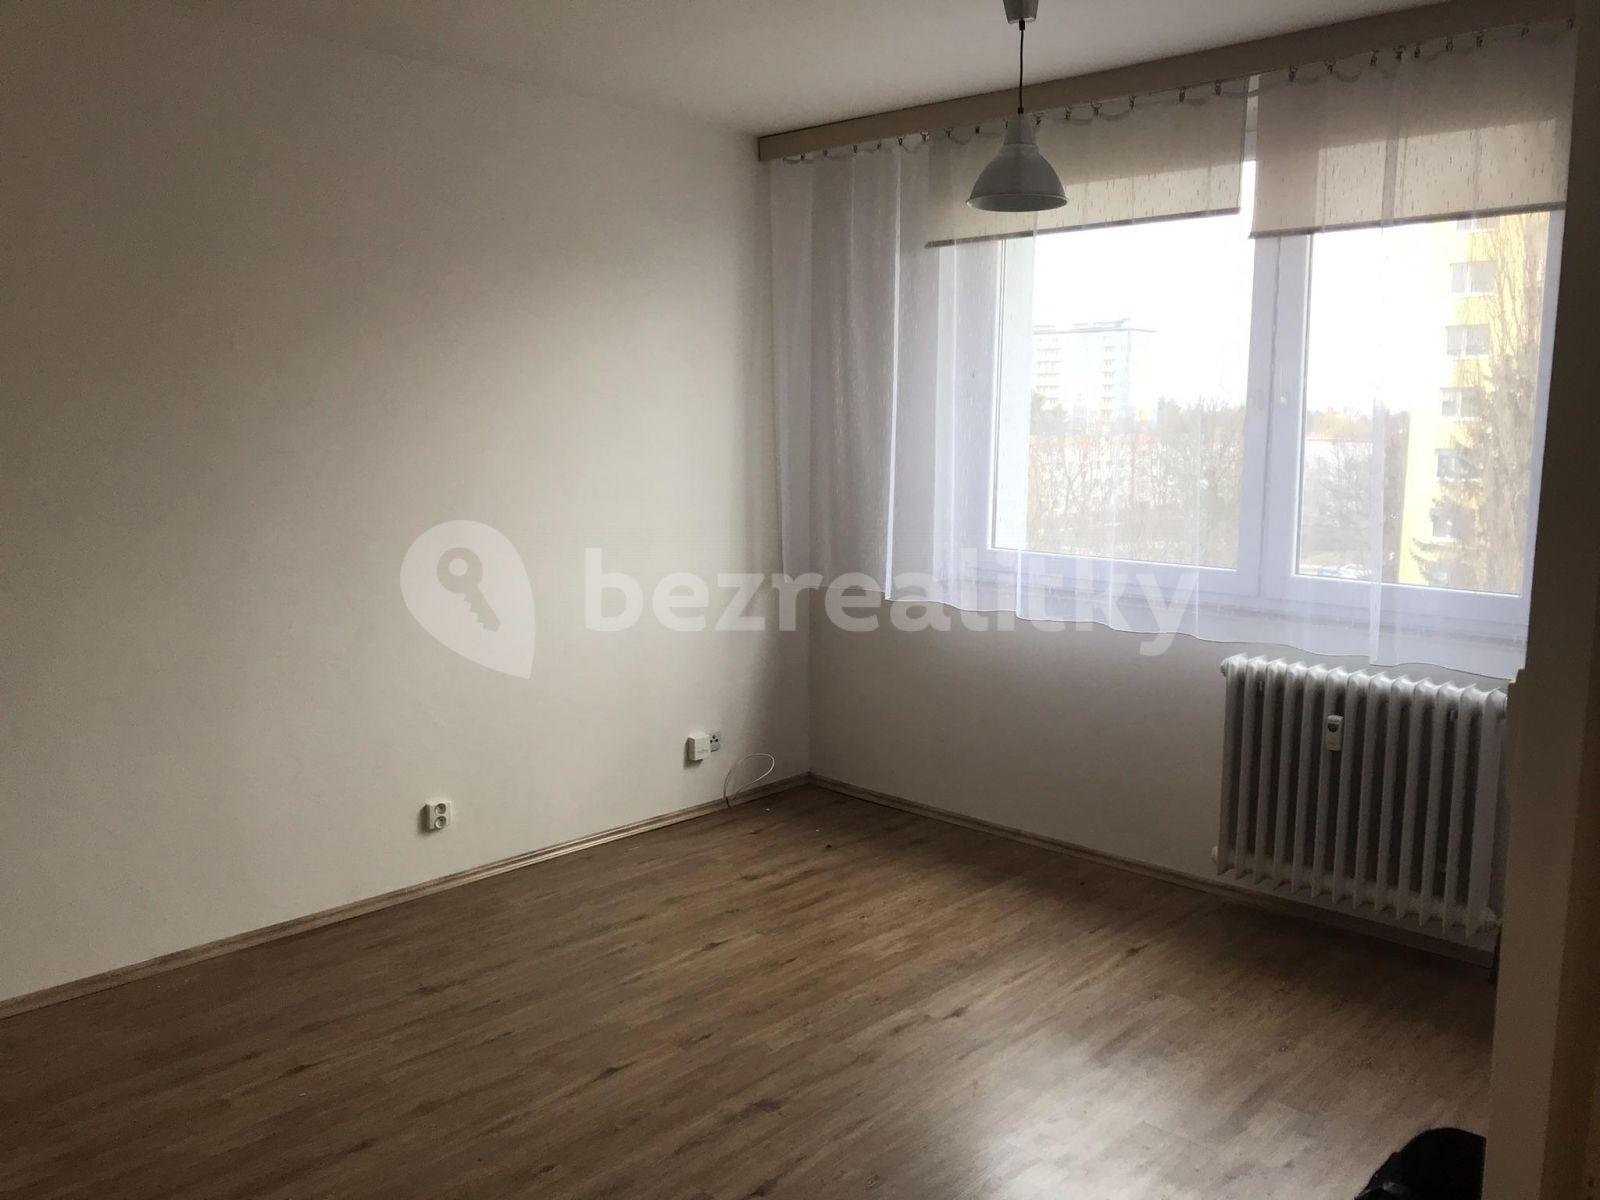 1 bedroom flat to rent, 35 m², Polní, Otrokovice, Zlínský Region